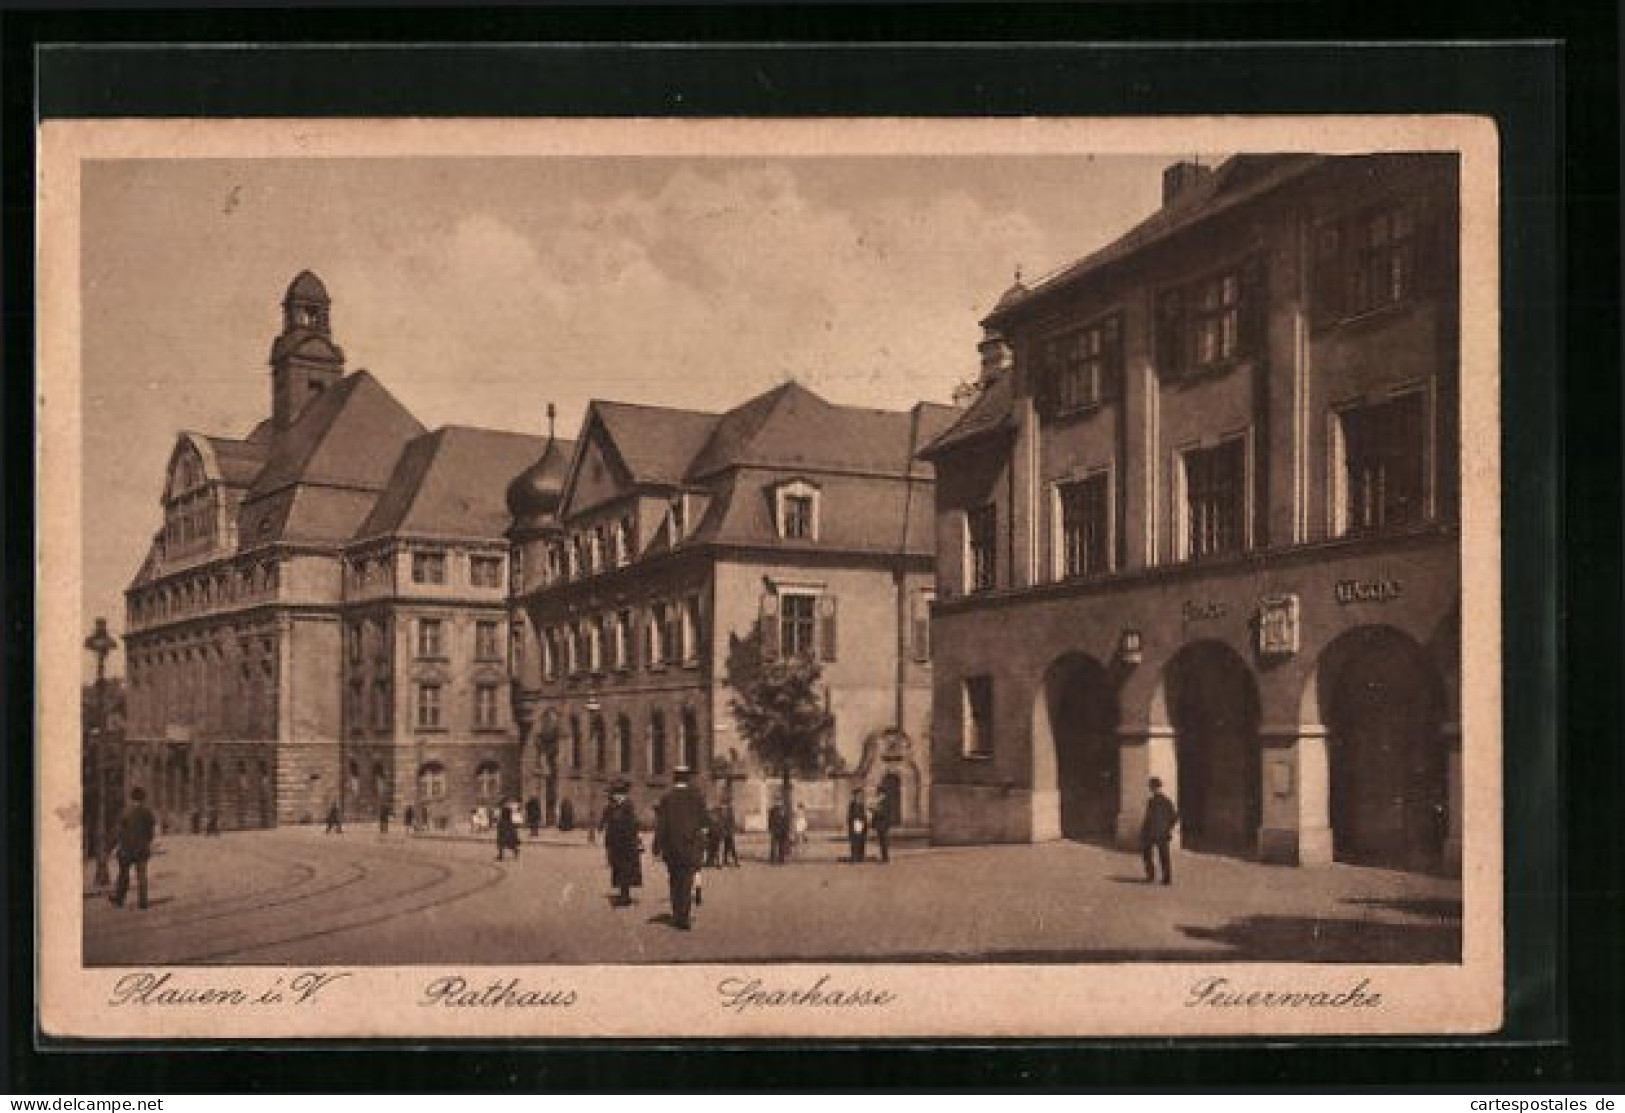 AK Plauen I. V., Rathaus, Sparkasse, Feuerwache  - Bombero